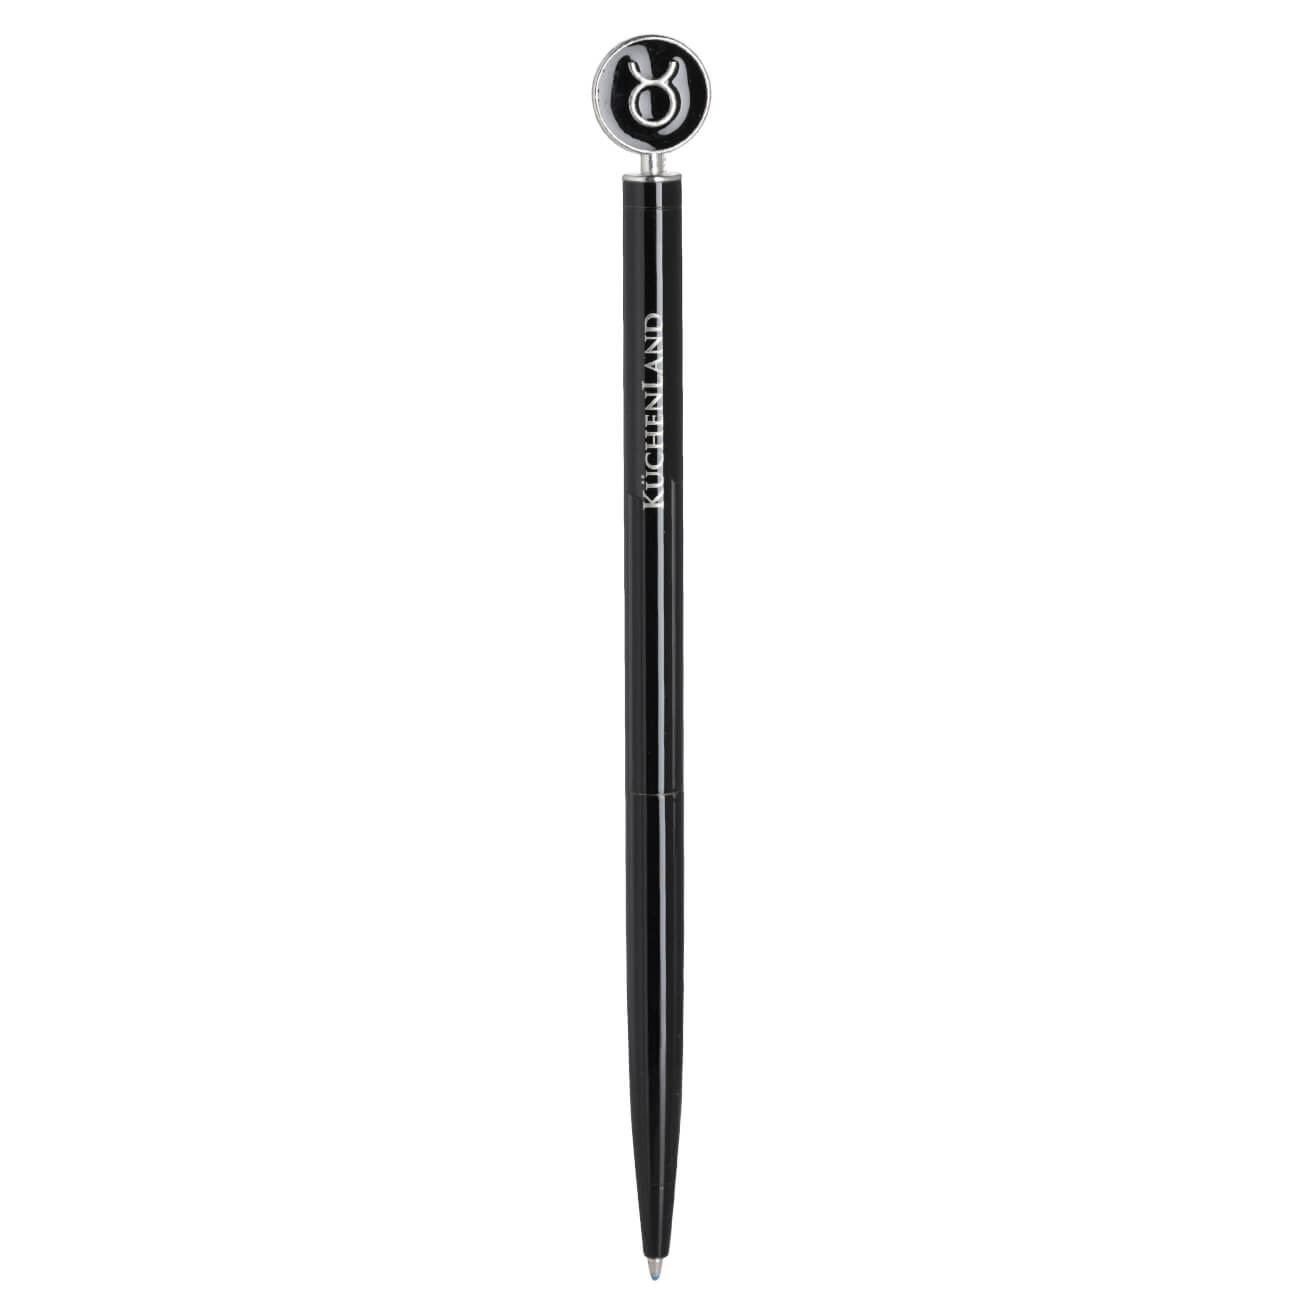 Ручка шариковая, 15 см, с фигуркой, сталь, черно-серебристая, Телец, Zodiac ручка подарочная шариковая